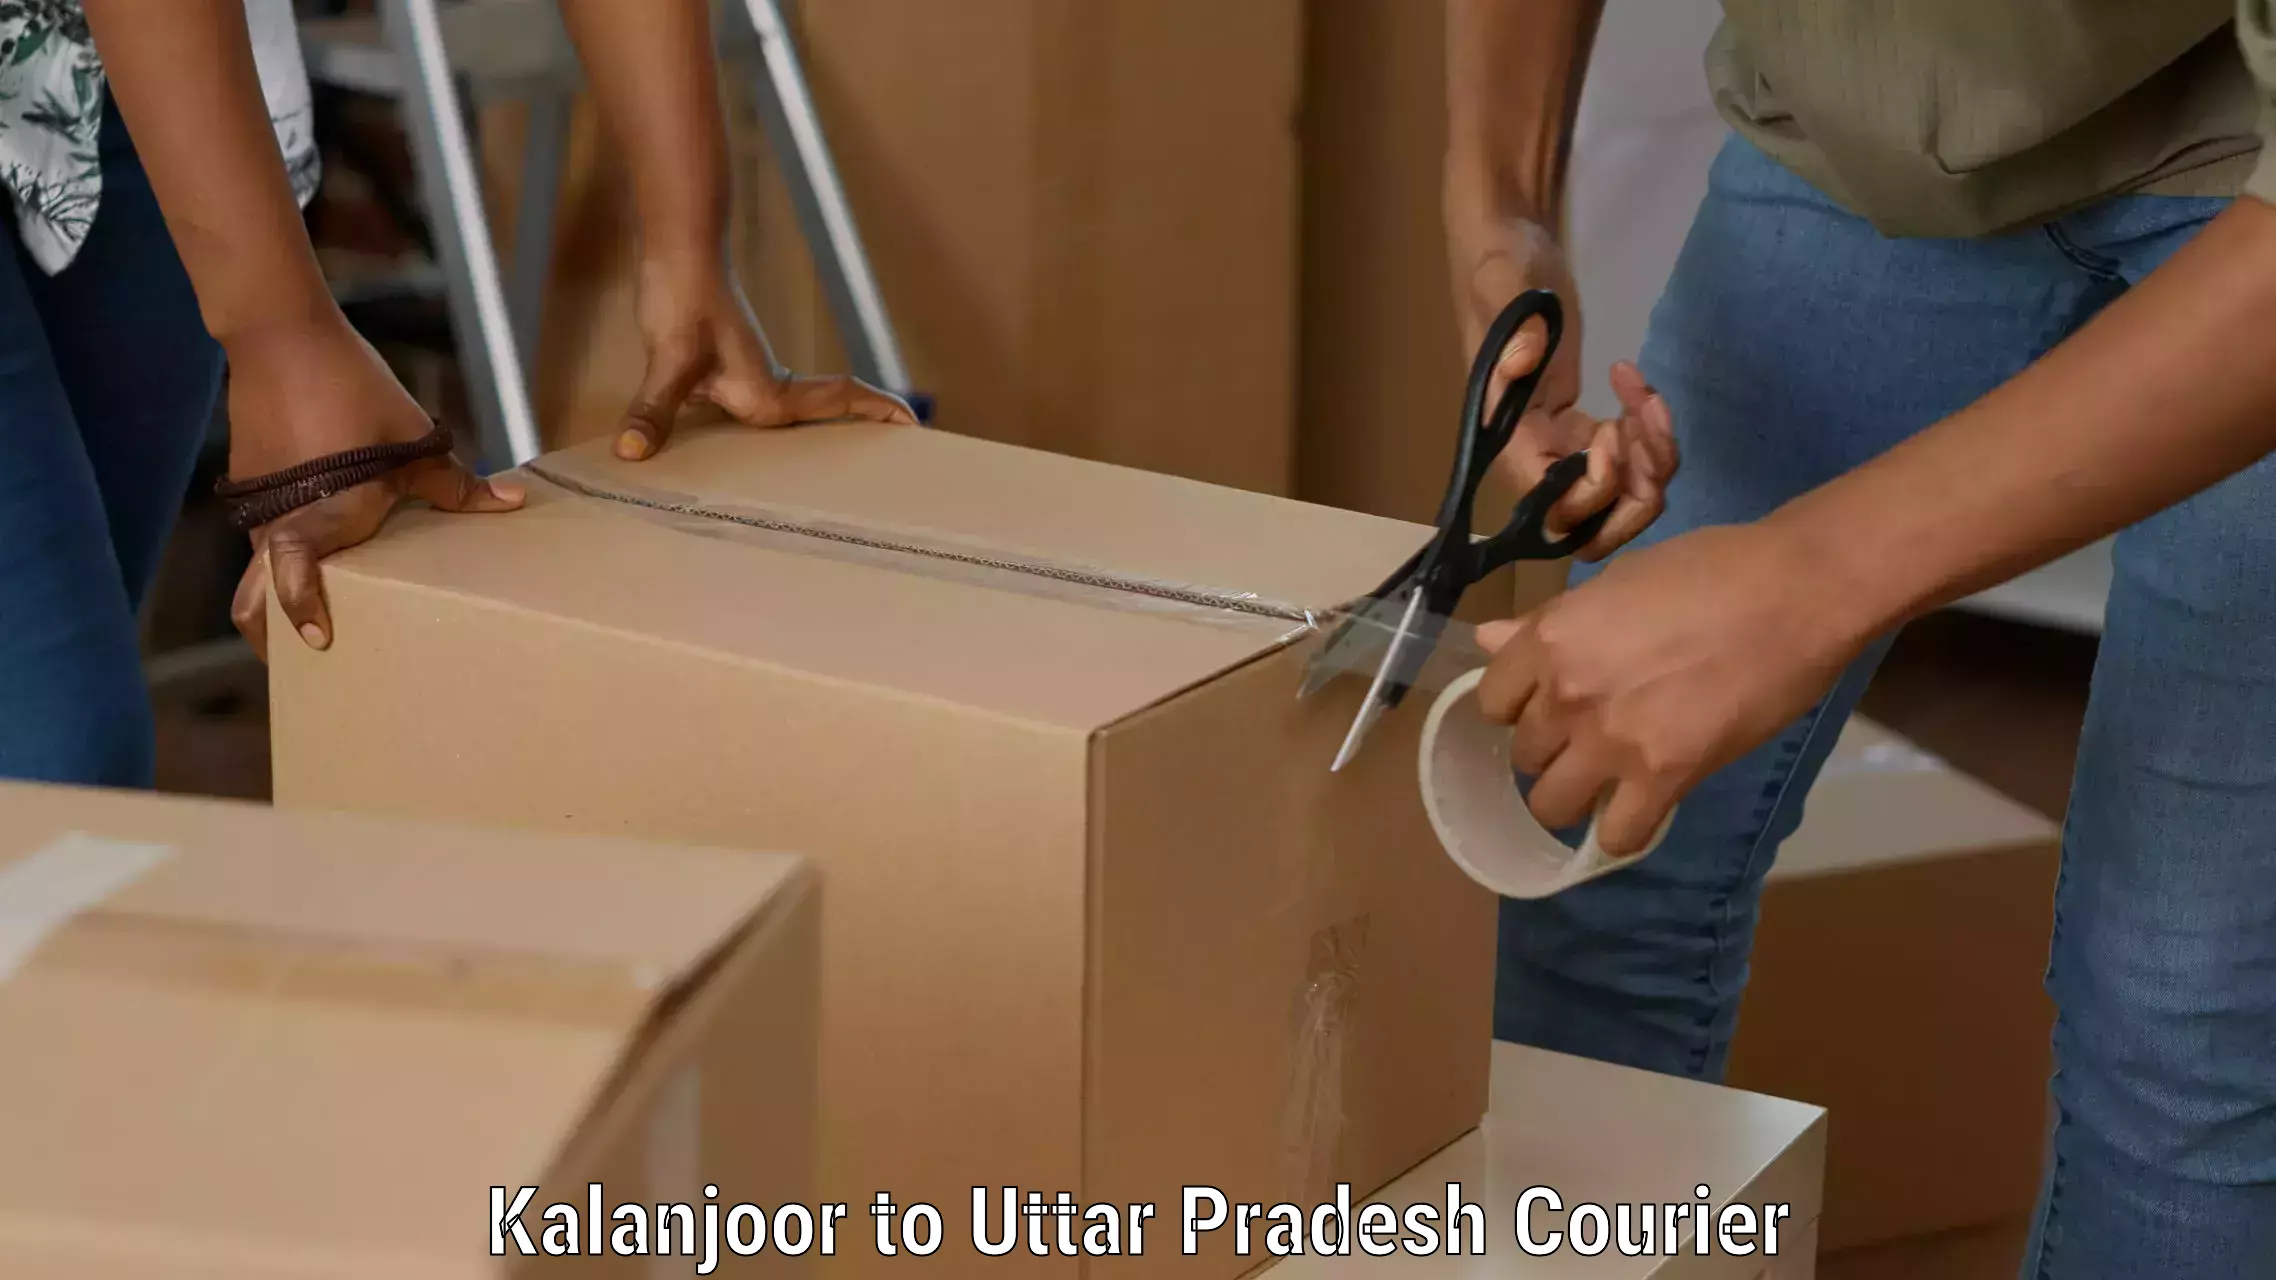 Versatile courier options Kalanjoor to Sant Ravidas Nagar